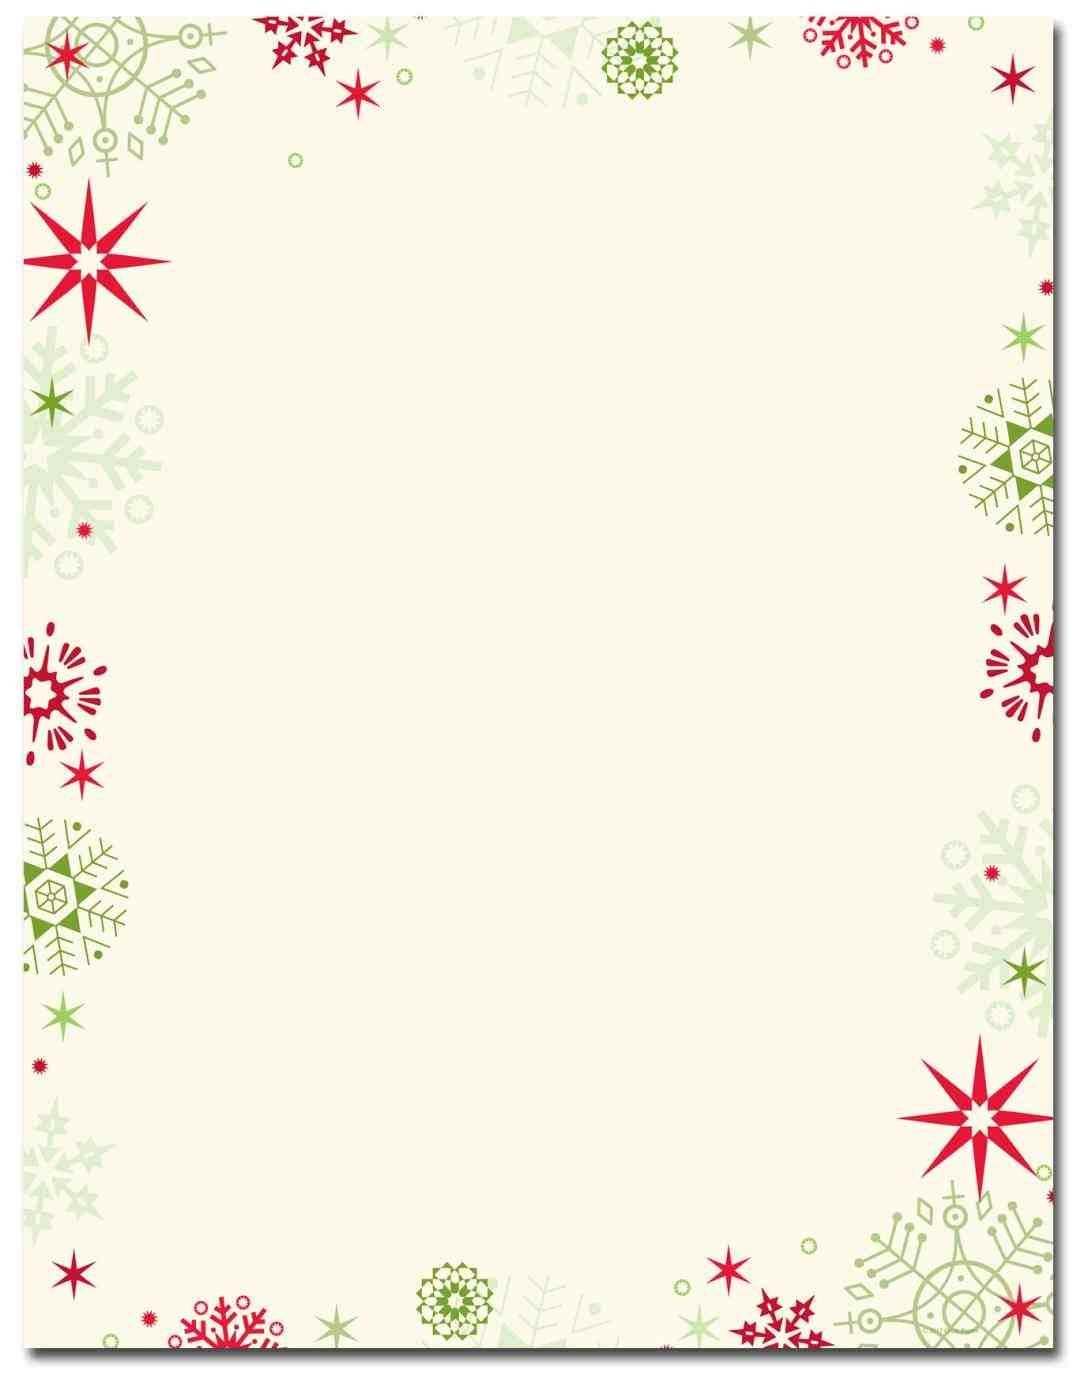 New Free Printable Christmas Stationary Borders At Temasistemi - Free Printable Christmas Stationary